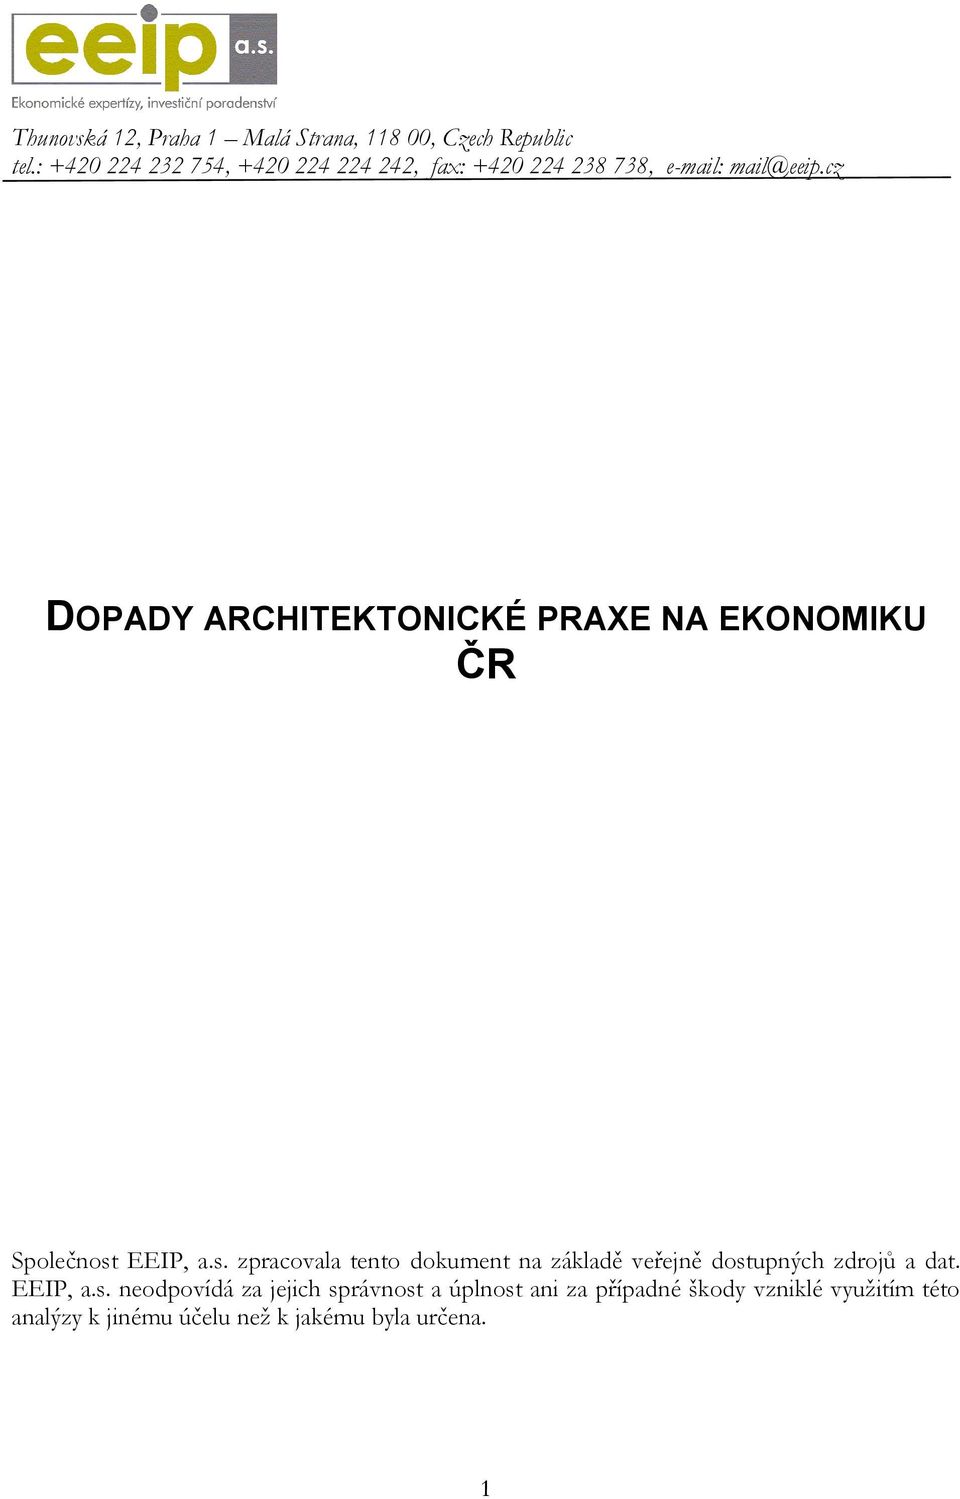 cz DOPADY ARCHITEKTONICKÉ PRAXE NA EKONOMIKU ČR Společnost